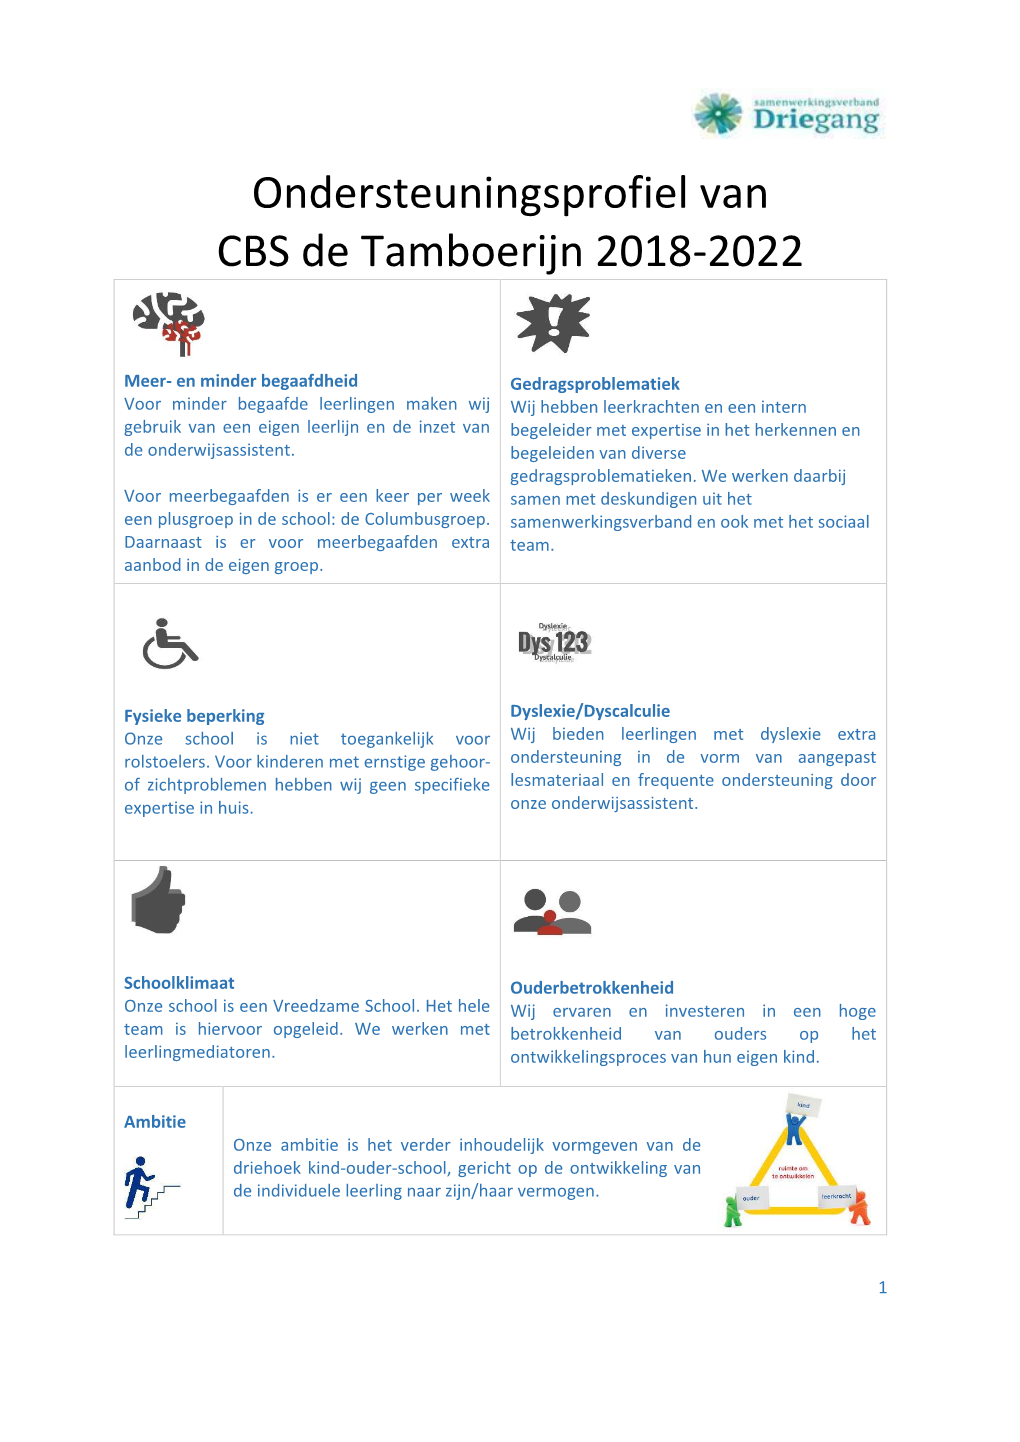 Ondersteuningsprofiel Van CBS De Tamboerijn 2018-2022